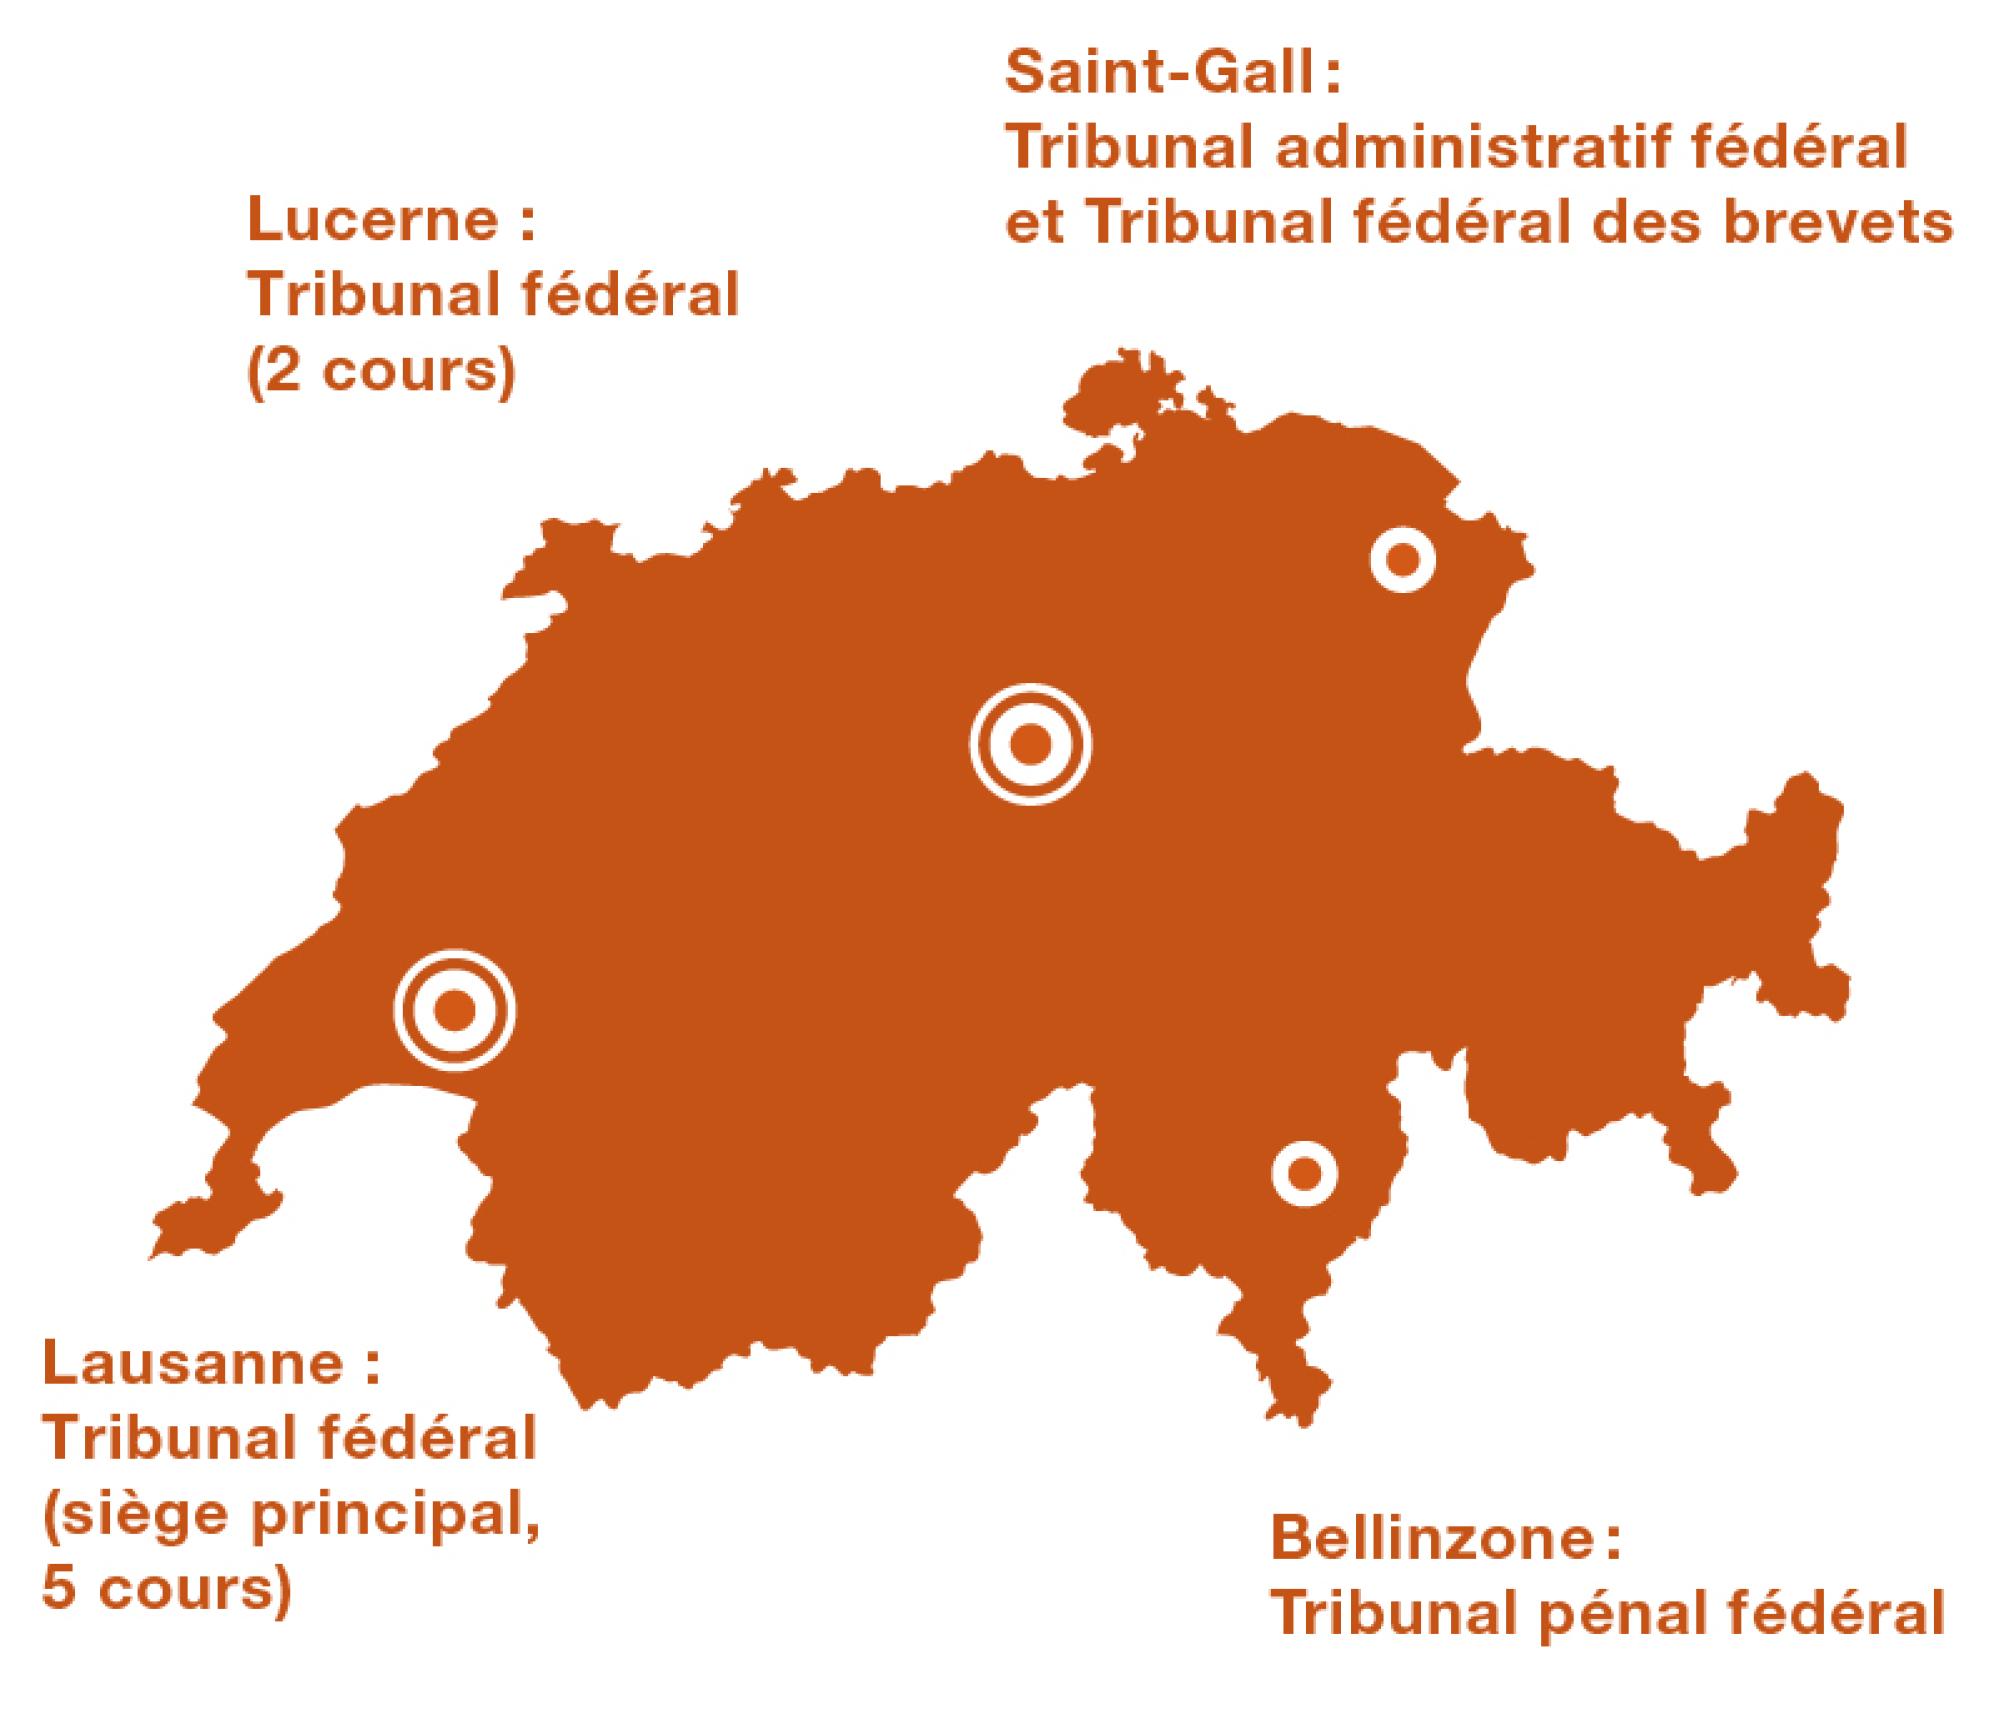 Les tribunaux de la Confédération sont répartis sur quatre sites. Lausanne: siège principal du Tribunal fédéral (5 cours); Lucerne: Tribunal fédéral (2 cours); Saint-Gall : Tribunal administratif fédéral et Tribunal fédéral des brevets et Bellinzone : Tribunal pénal fédéral.